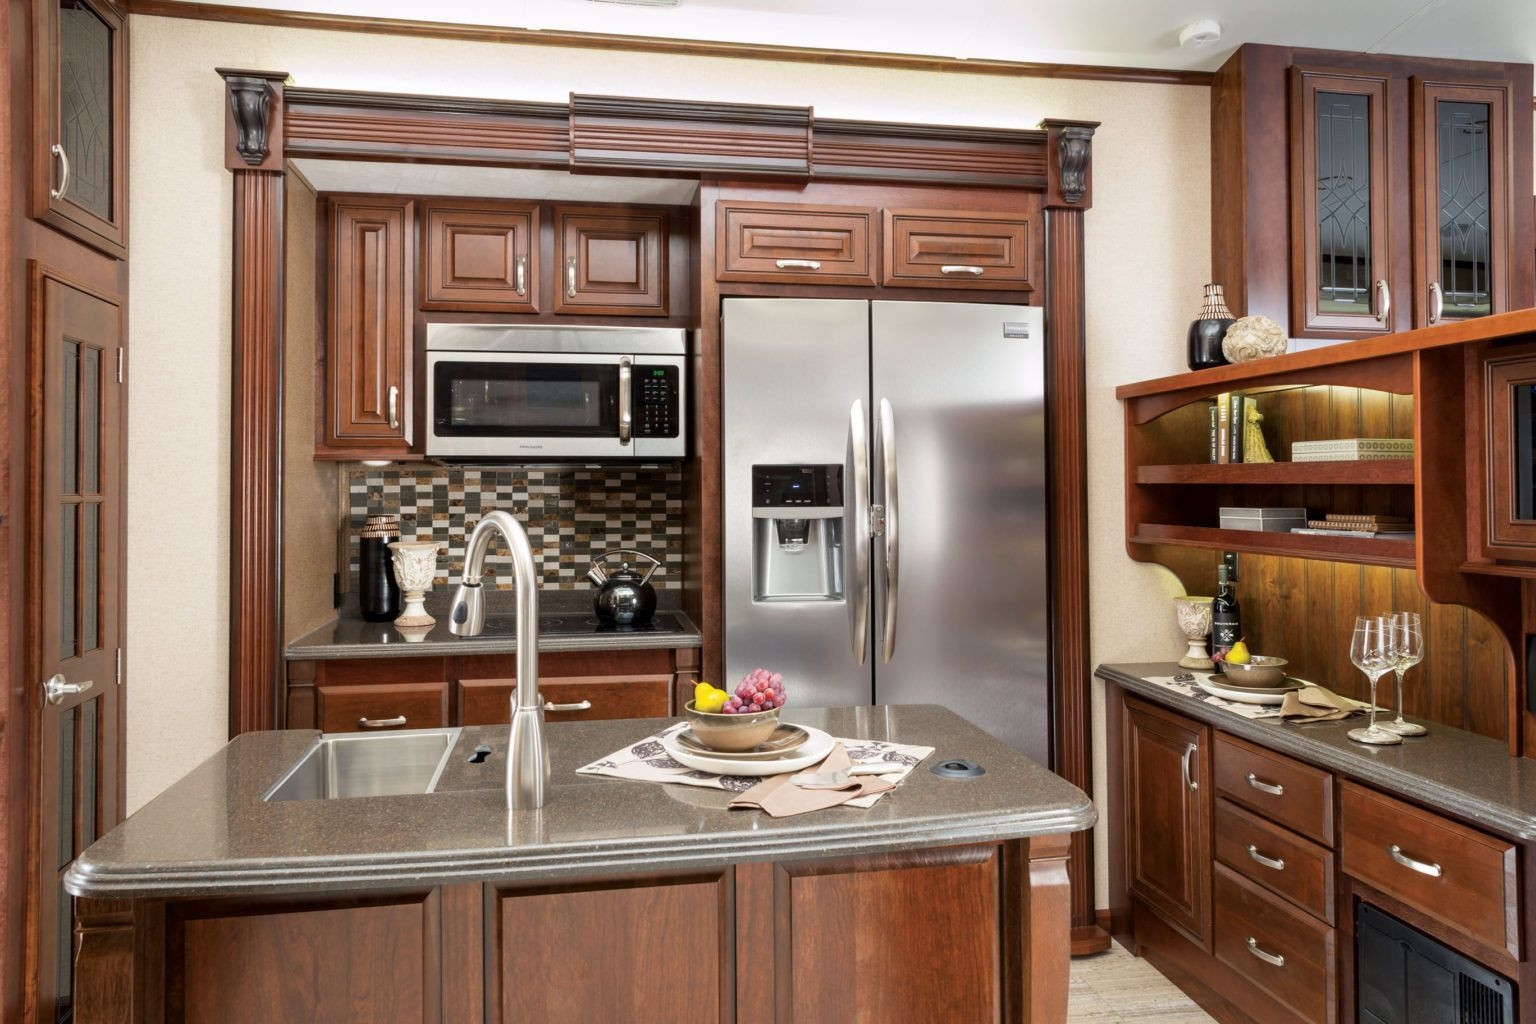 Rv Kitchen Storage Accessories
 25 RV Kitchen Accessories and Gad s For Your RV in 2020